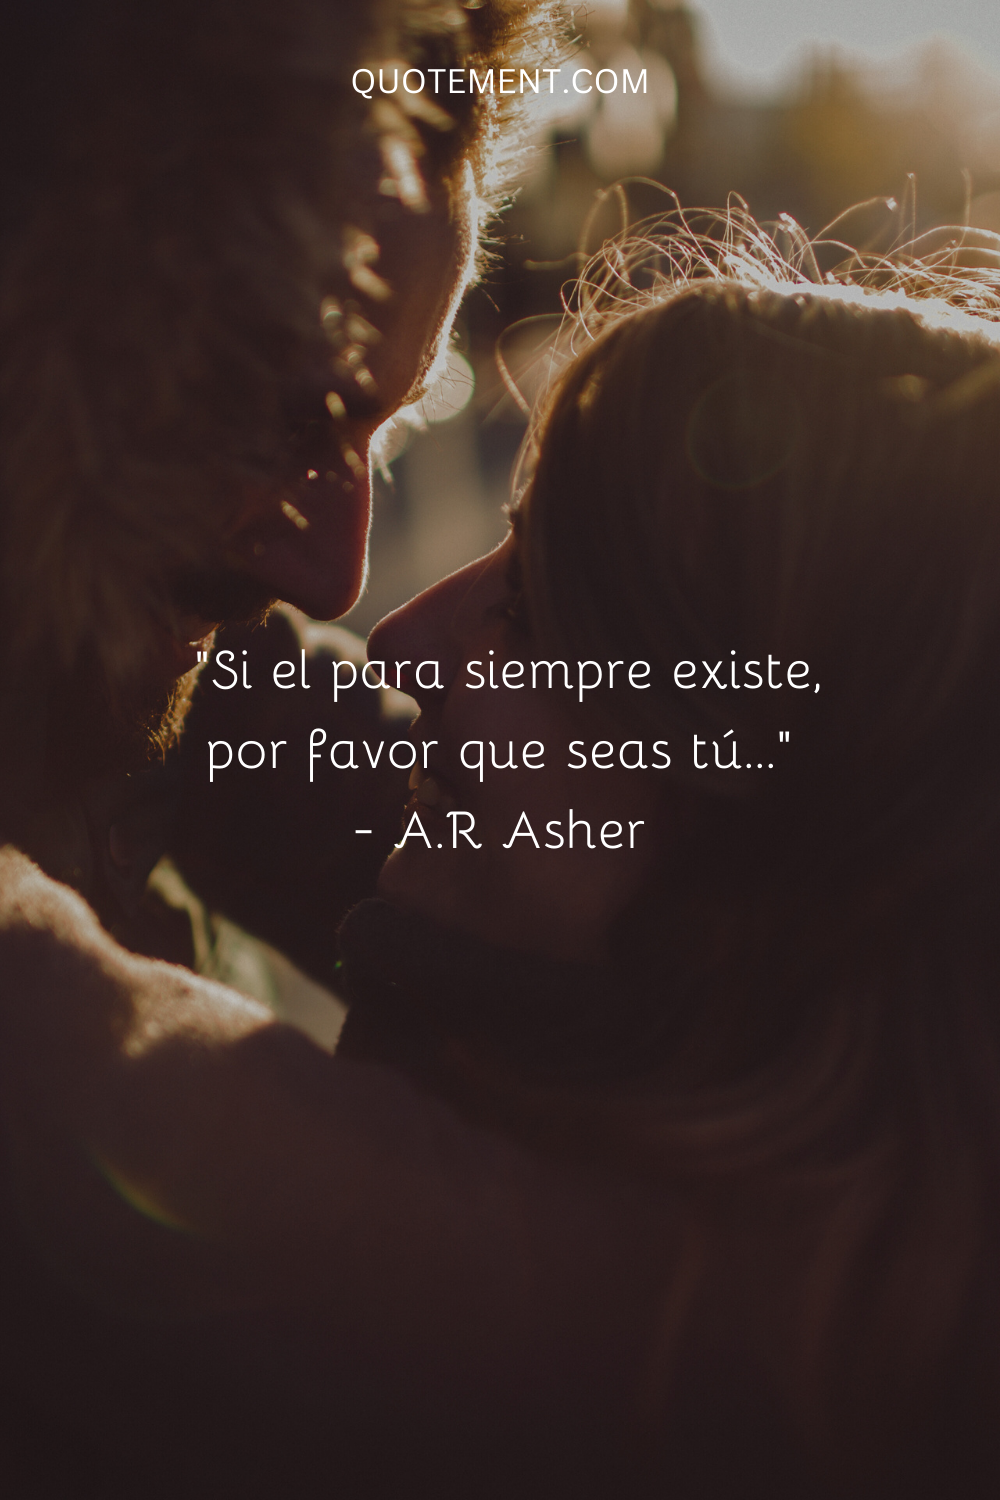 "Si el para siempre existe, por favor, que seas tú..." - A.R Asher